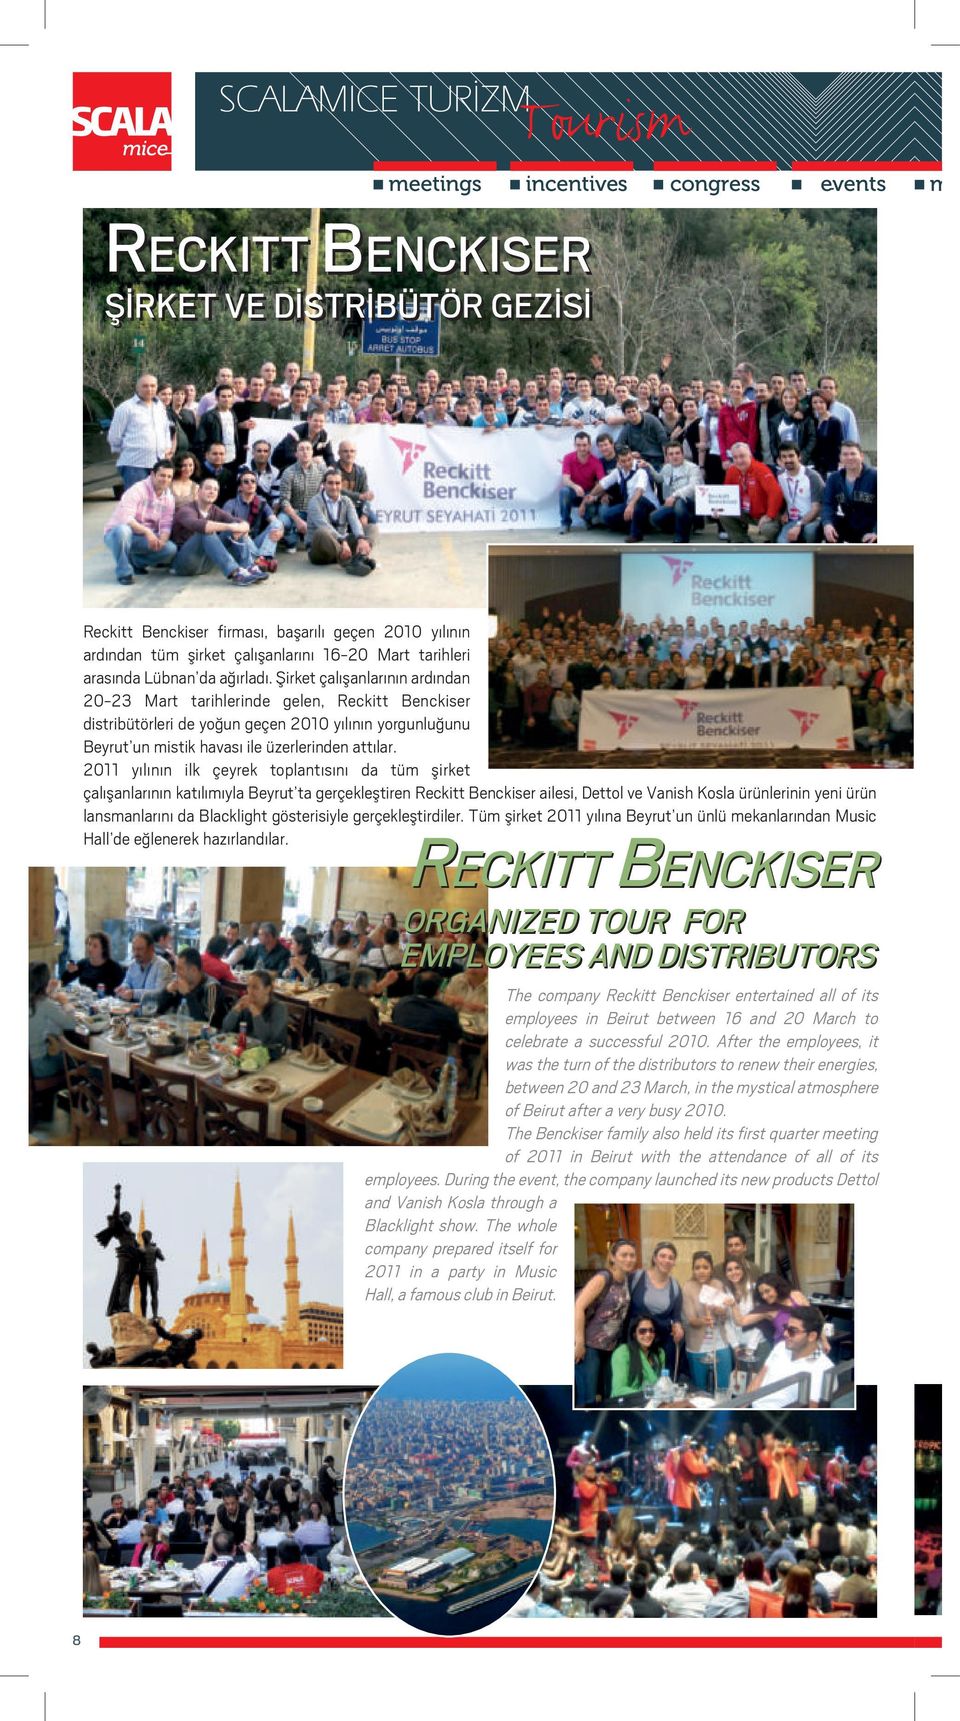 Şirket çalışanlarının ardından 20-23 Mart tarihlerinde gelen, Reckitt Benckiser distribütörleri de yoğun geçen 2010 yılının yorgunluğunu Beyrut un mistik havası ile üzerlerinden attılar.